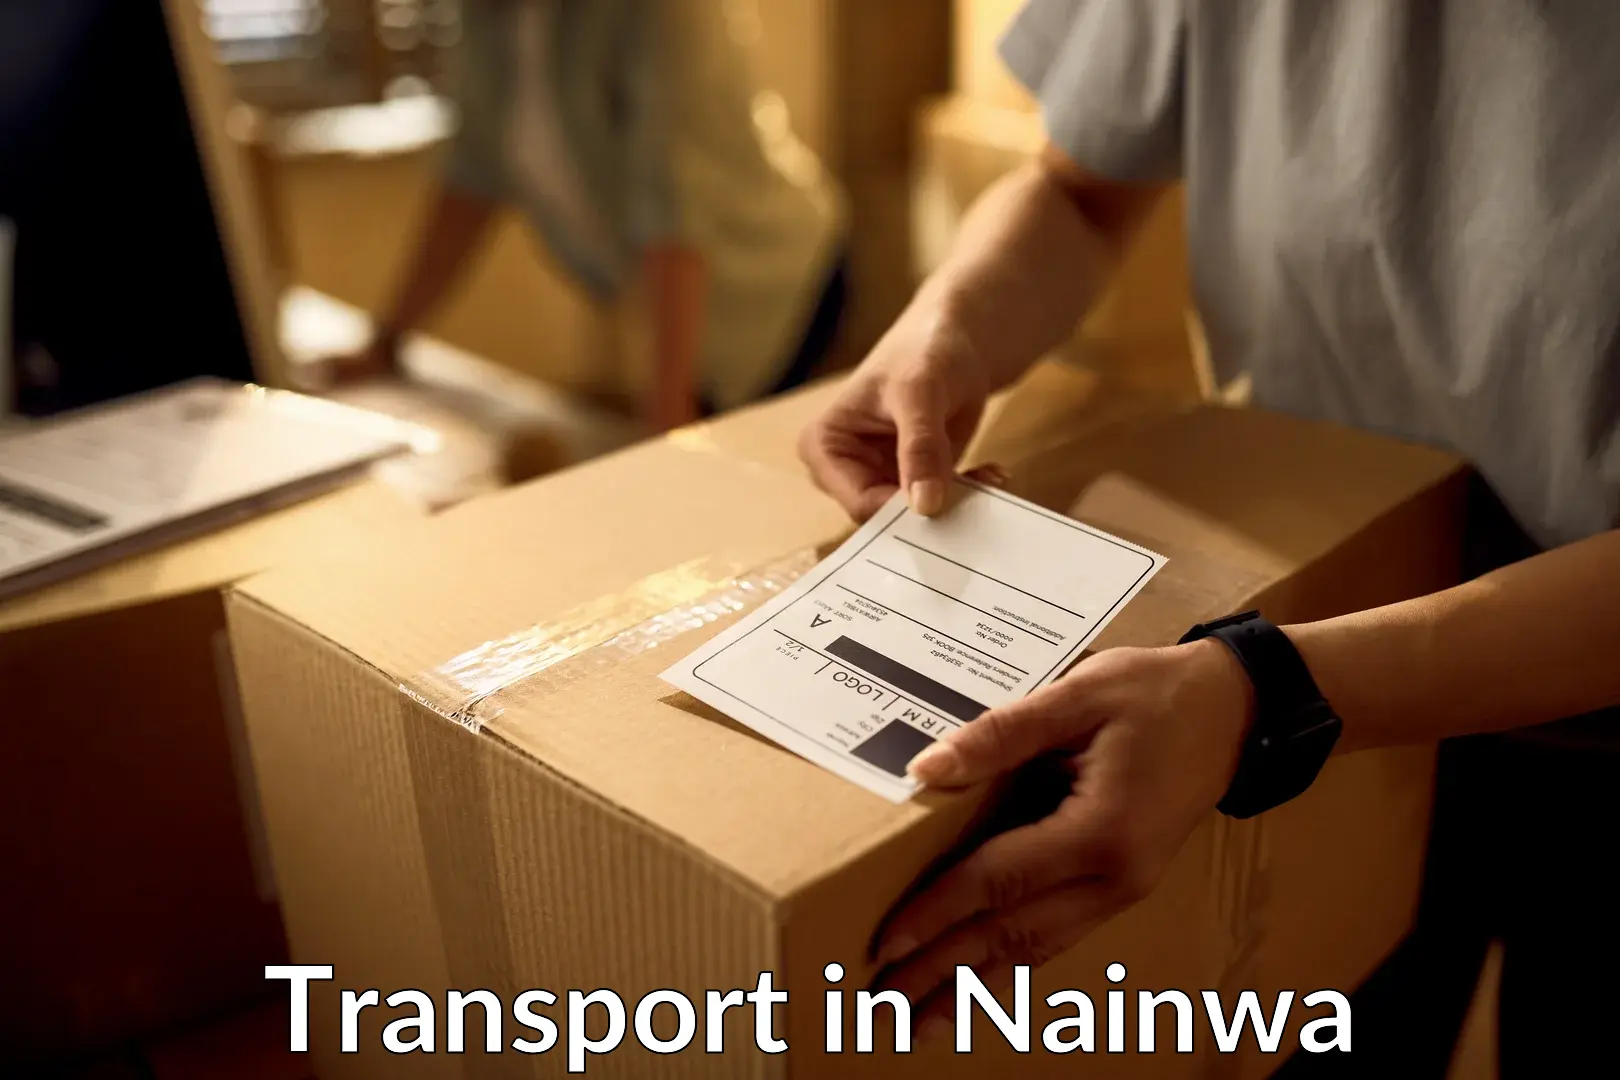 Transportation services in Nainwa